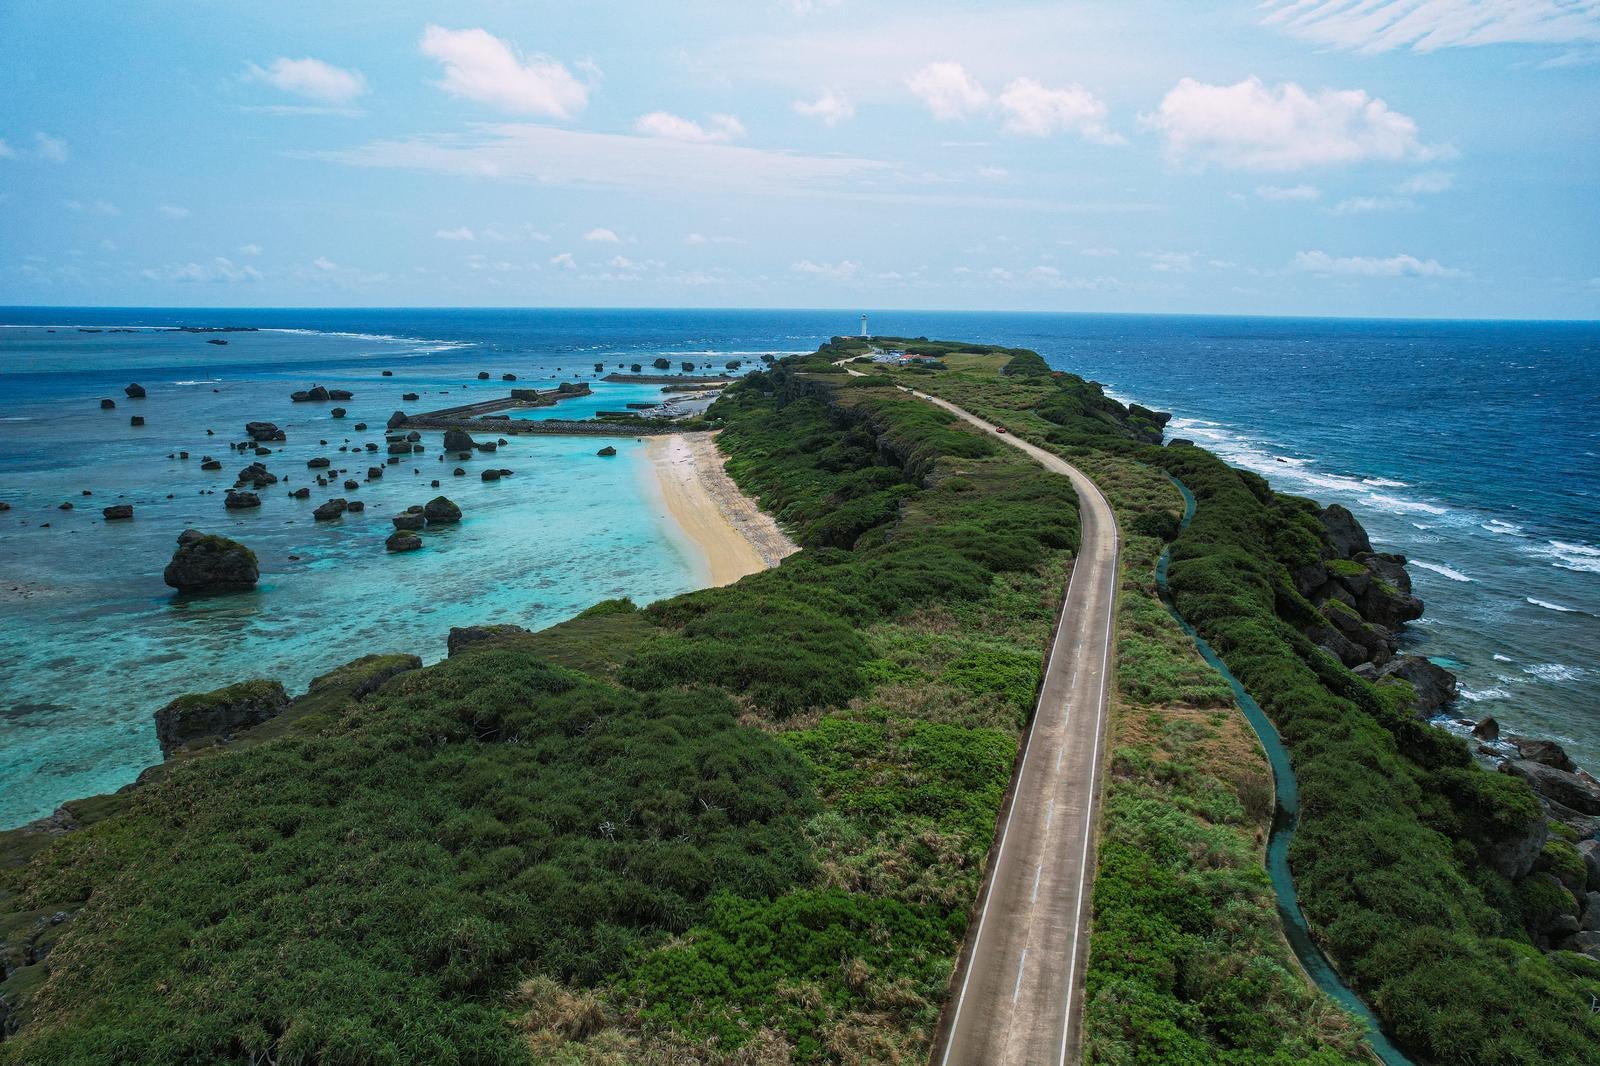 「平安名埼灯台まで続く道と美しい岩礁の海（空撮）」の写真